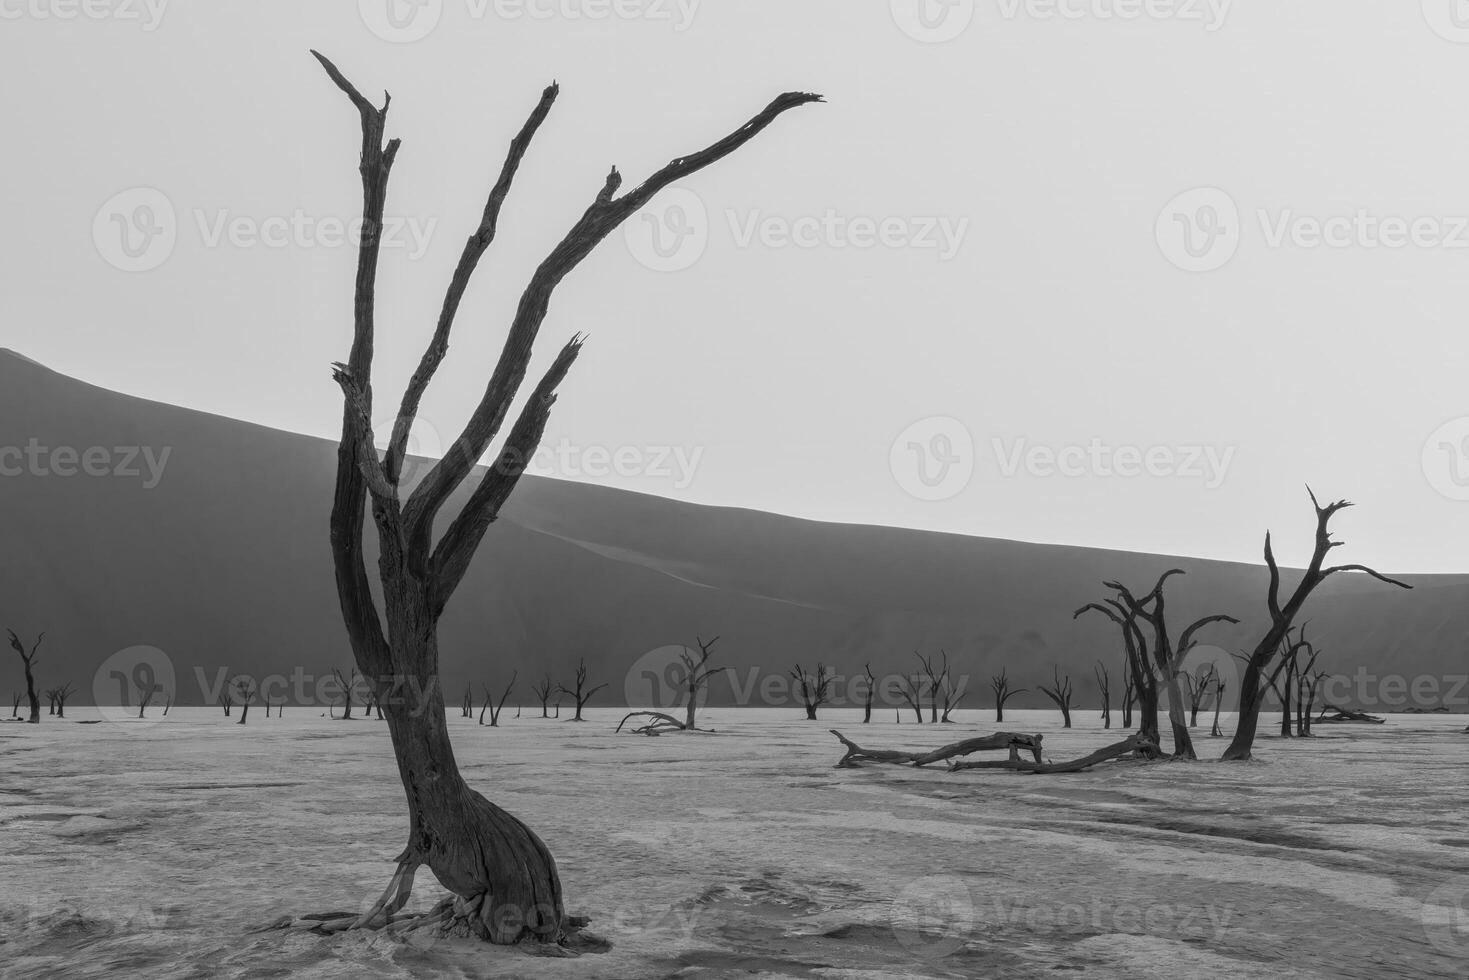 afbeelding van een dood boom in de deadvlei zout pan in de namib woestijn in voorkant van rood zand duinen in de ochtend- licht foto